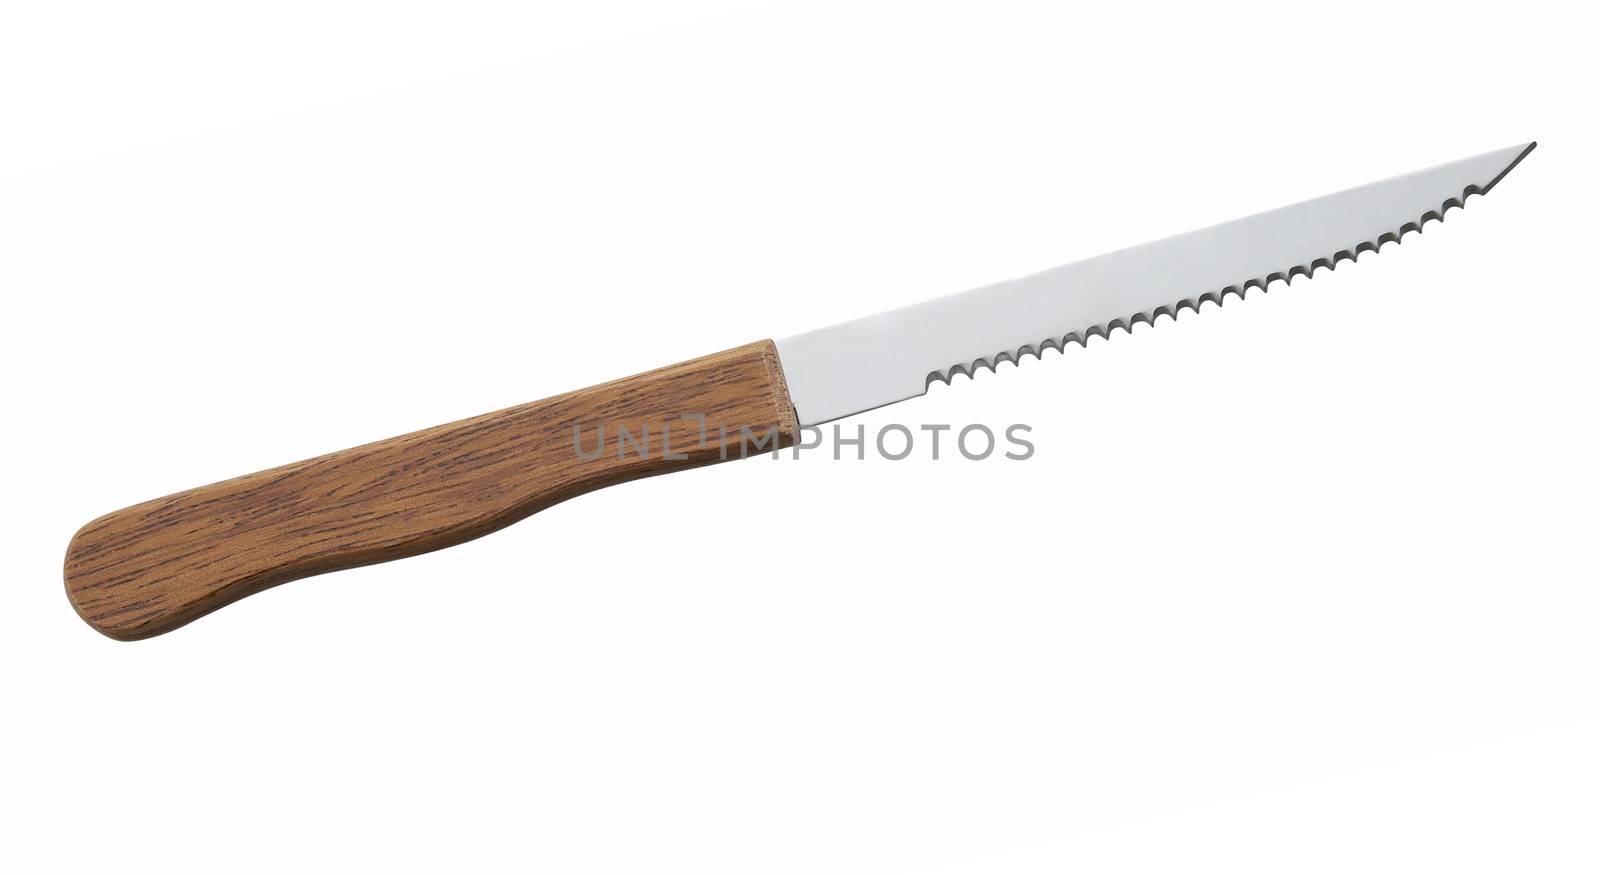 knife on white background